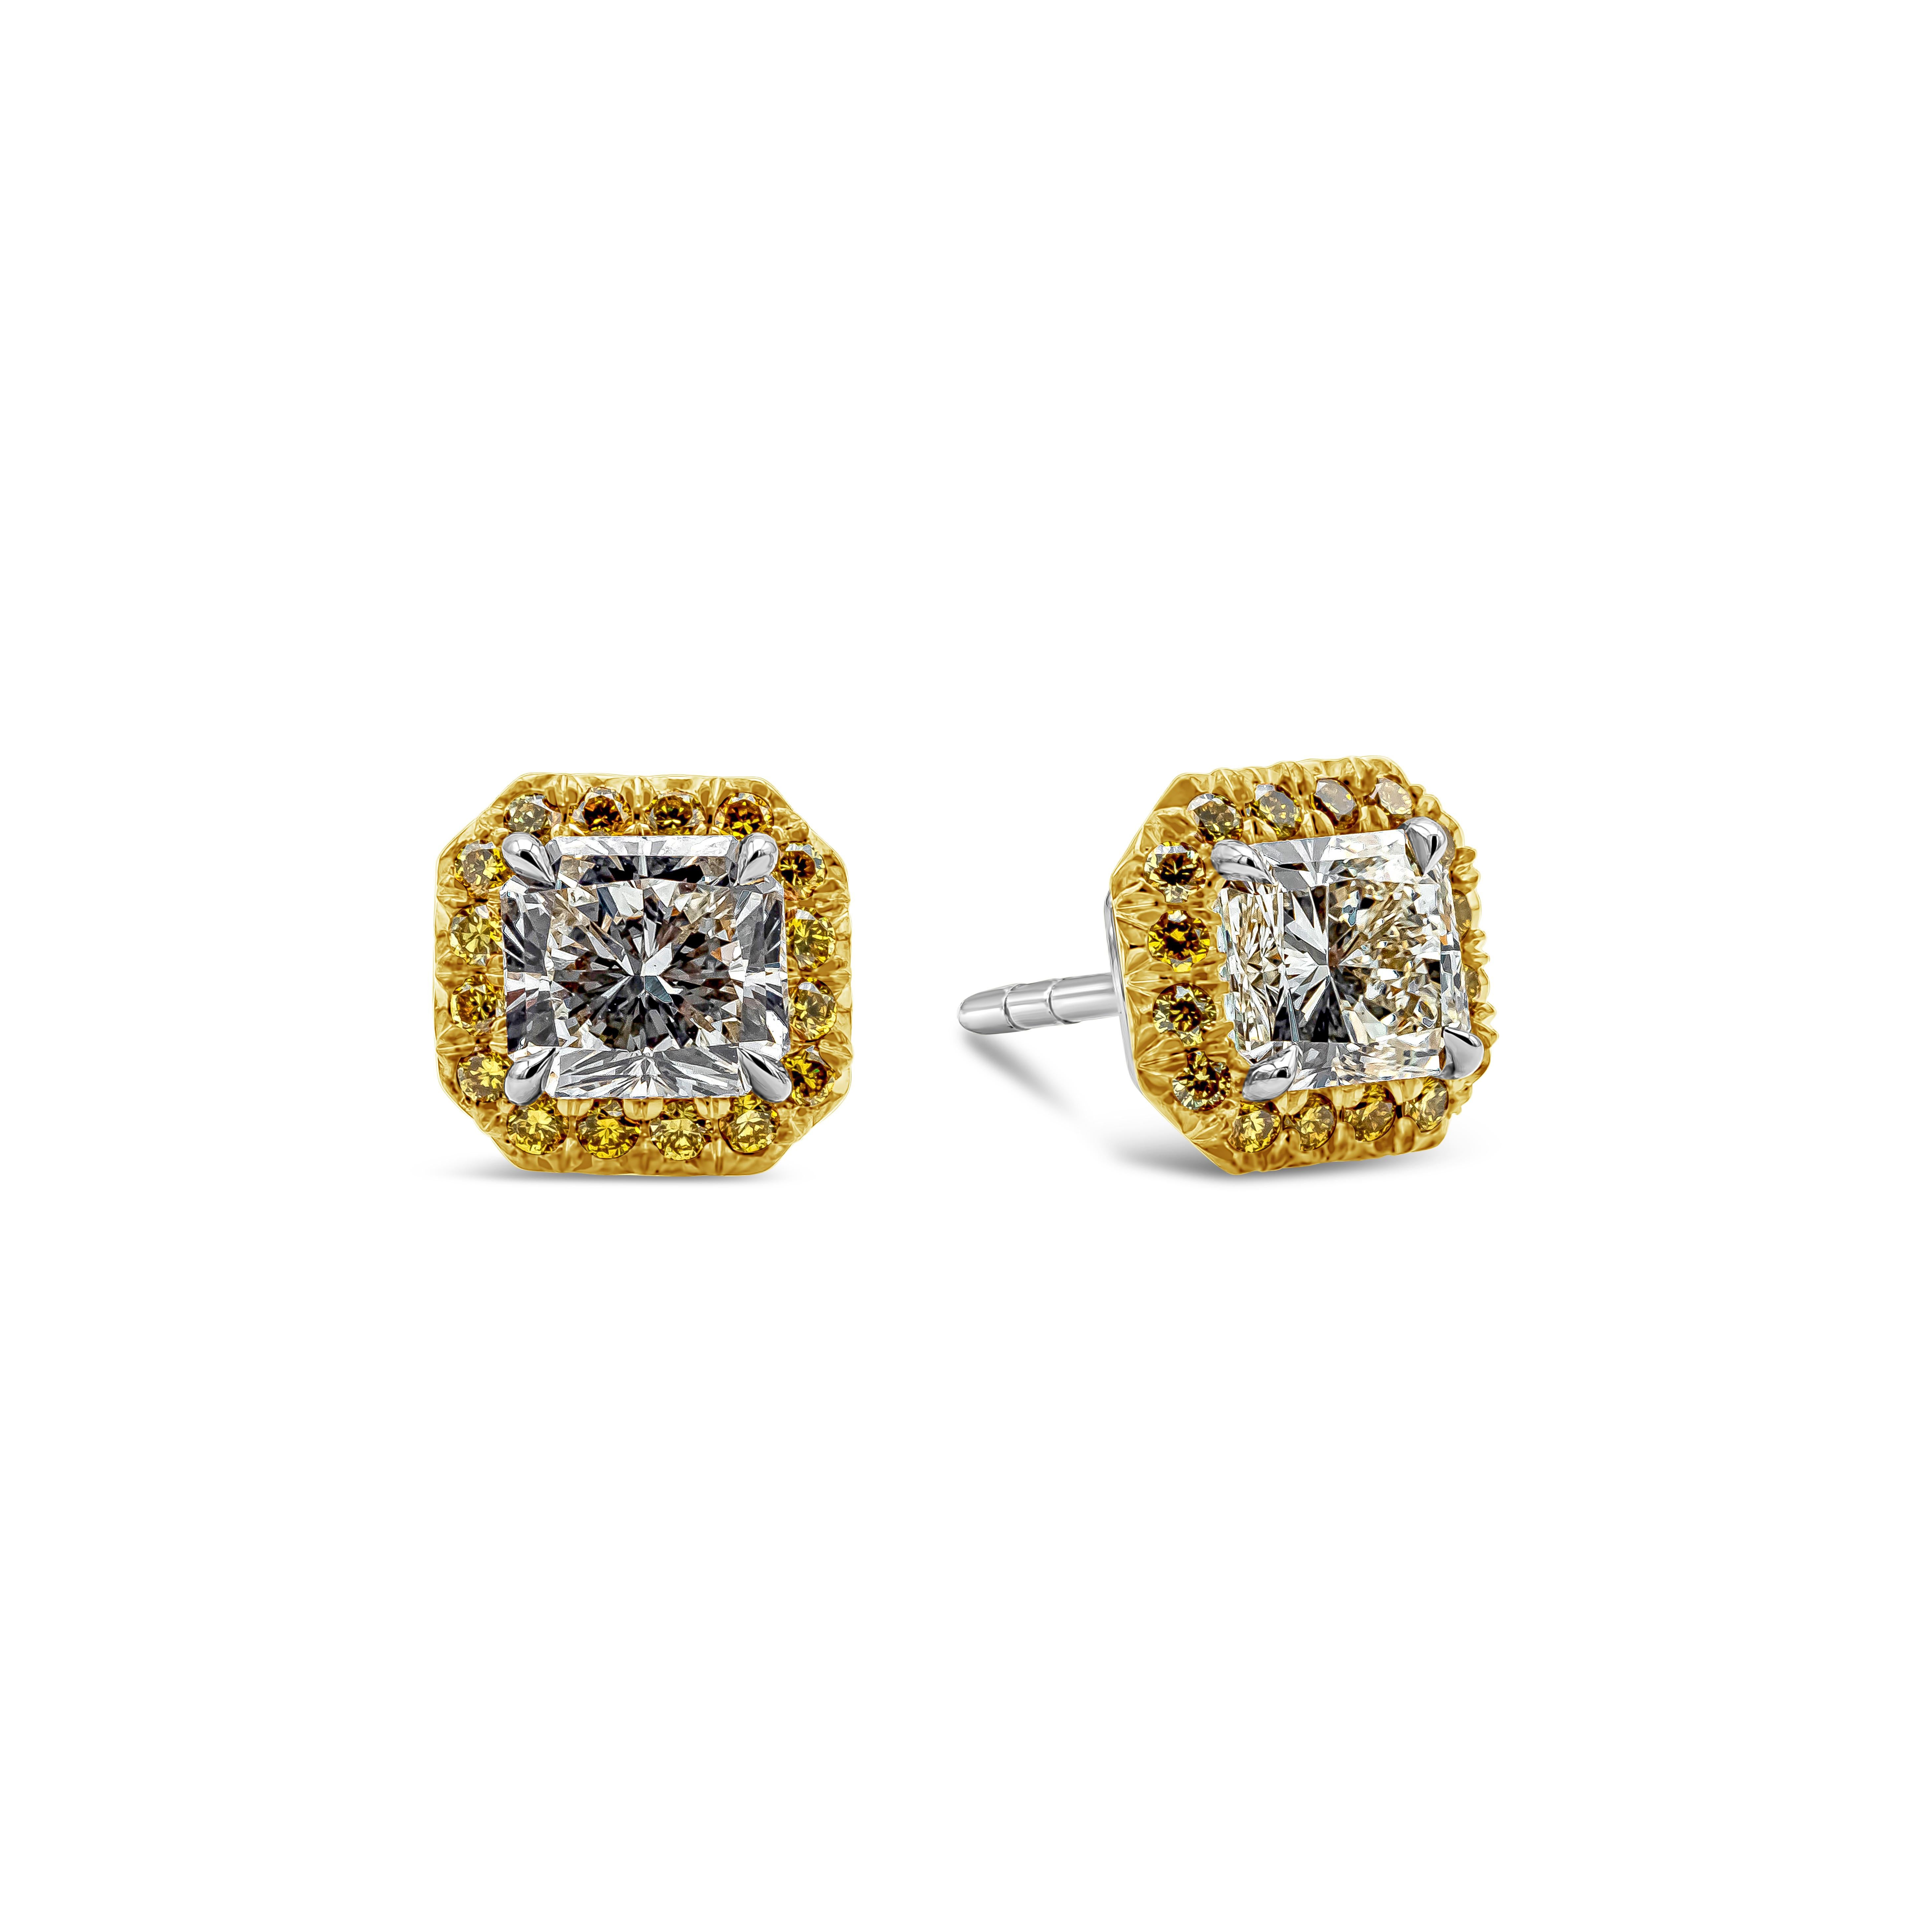 Dieses wunderschöne Paar Ohrringe präsentiert Diamanten im Strahlenschliff mit einem Gesamtgewicht von 1,73 Karat, Farbe K-L und Reinheit VS1- VS2. Umgeben von einer Reihe runder, brillanter, sehr gelber Diamanten mit einem Gesamtgewicht von 0,35